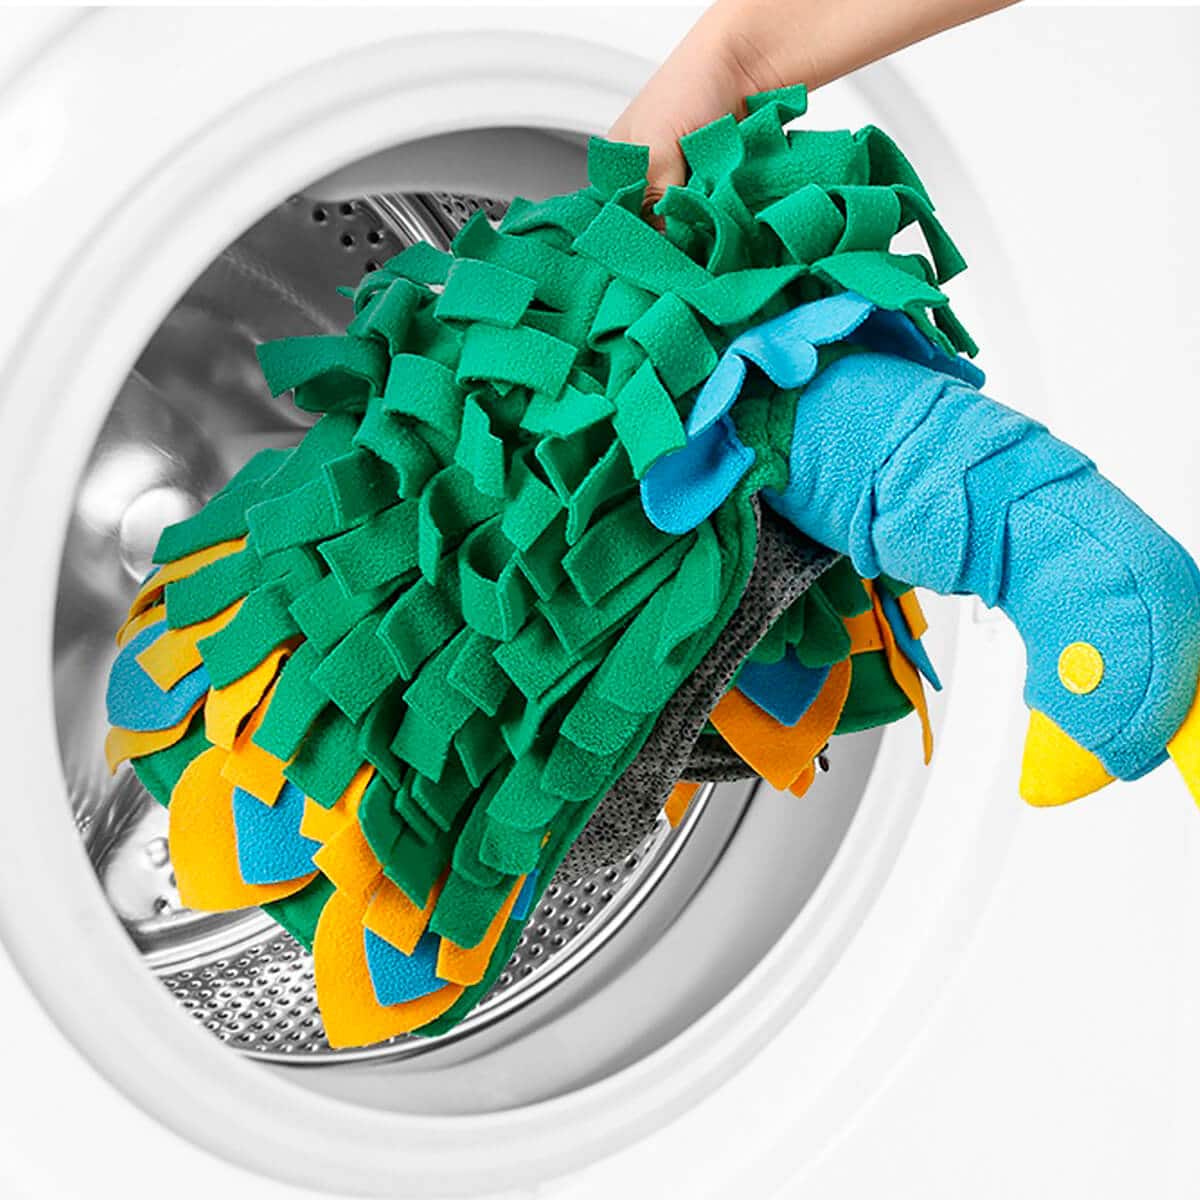 Riikinkukko aktivointimaton voi pestä pesukoneessa.